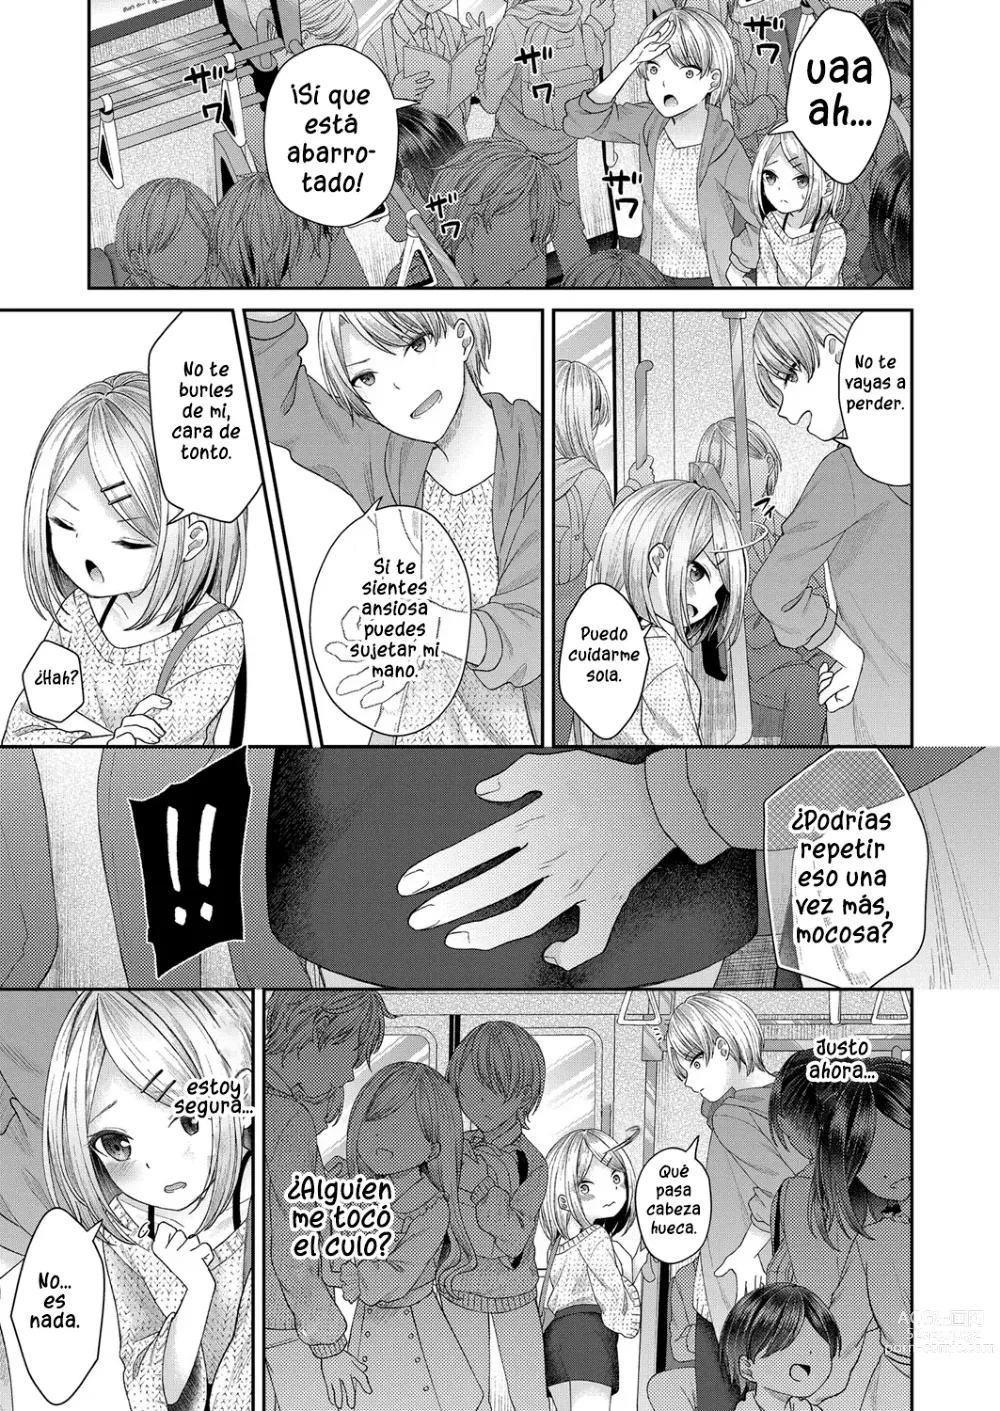 Page 5 of manga Dicktok